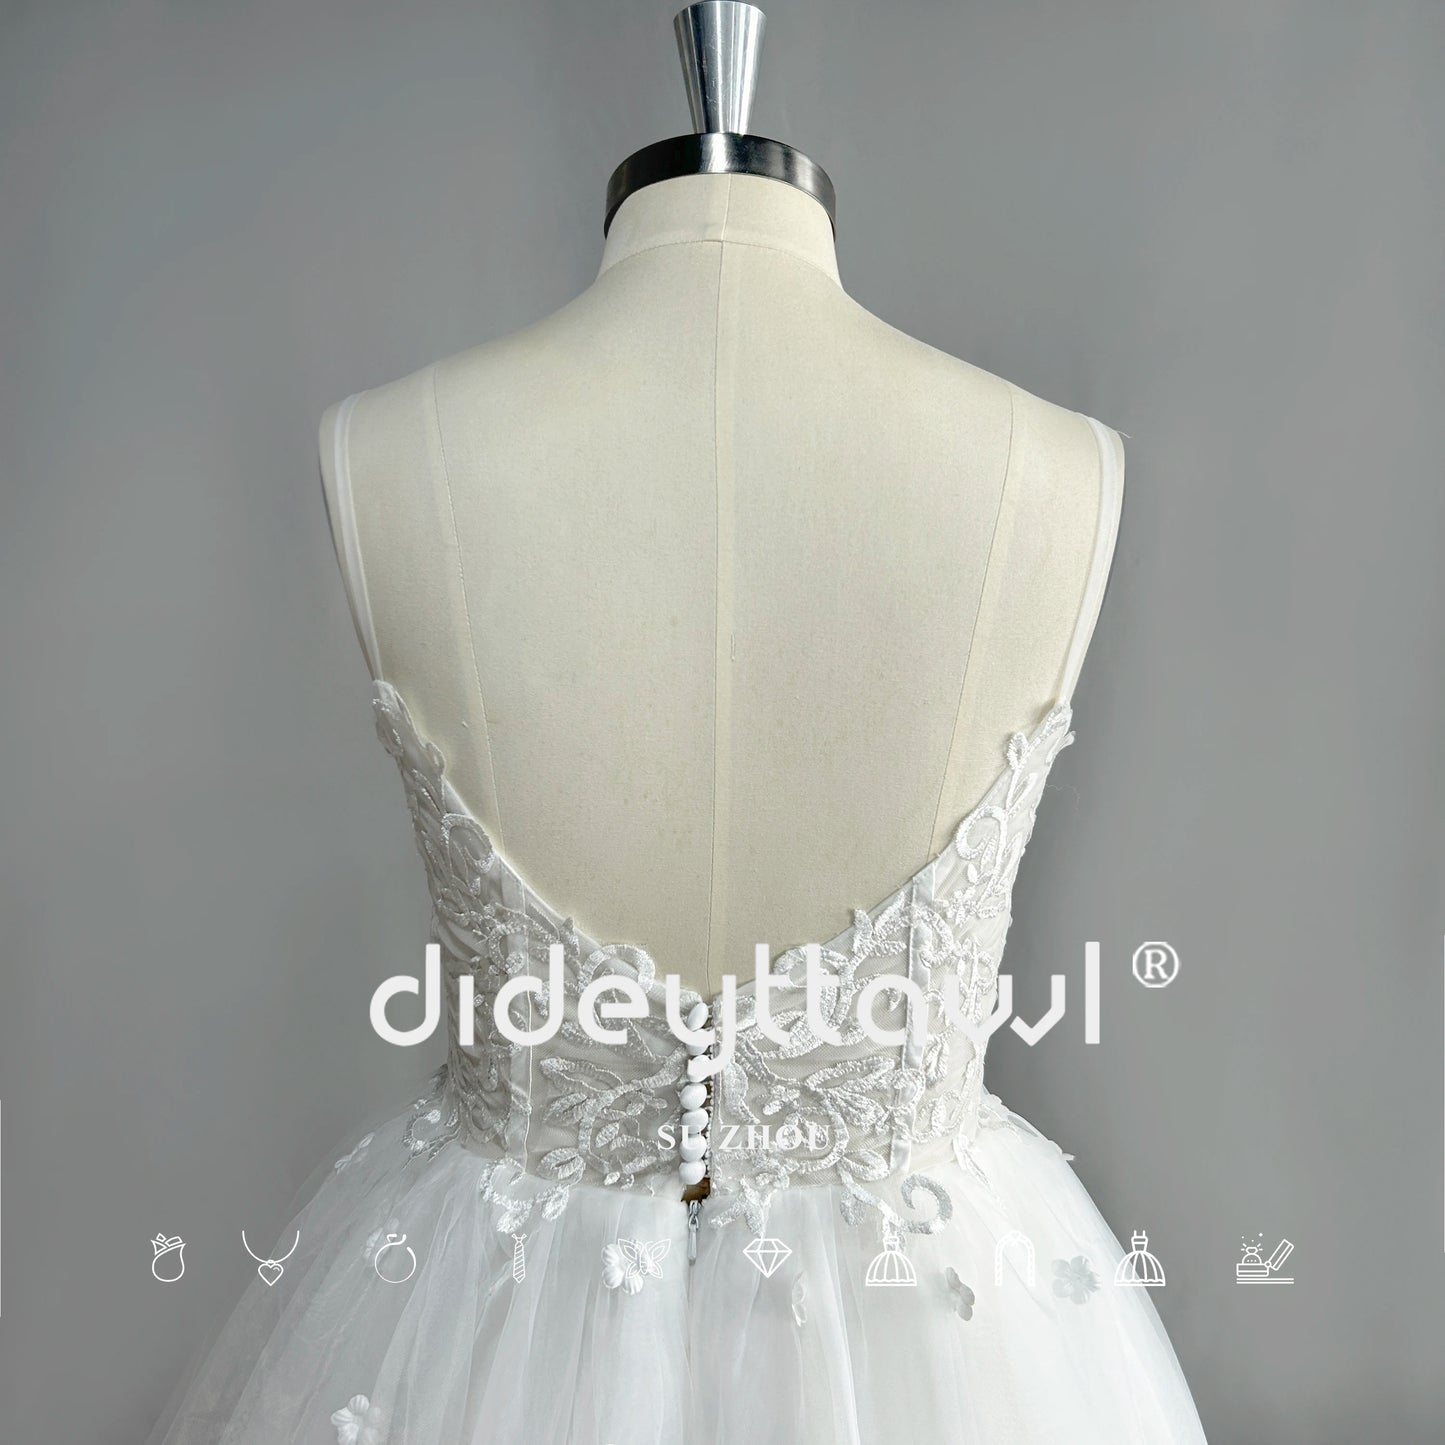 Dideyttawl kochanie długie rękawy Tiul Krótka suknia ślubna mini długość na ramię ślubną suknię ślubną prawdziwe zdjęcie